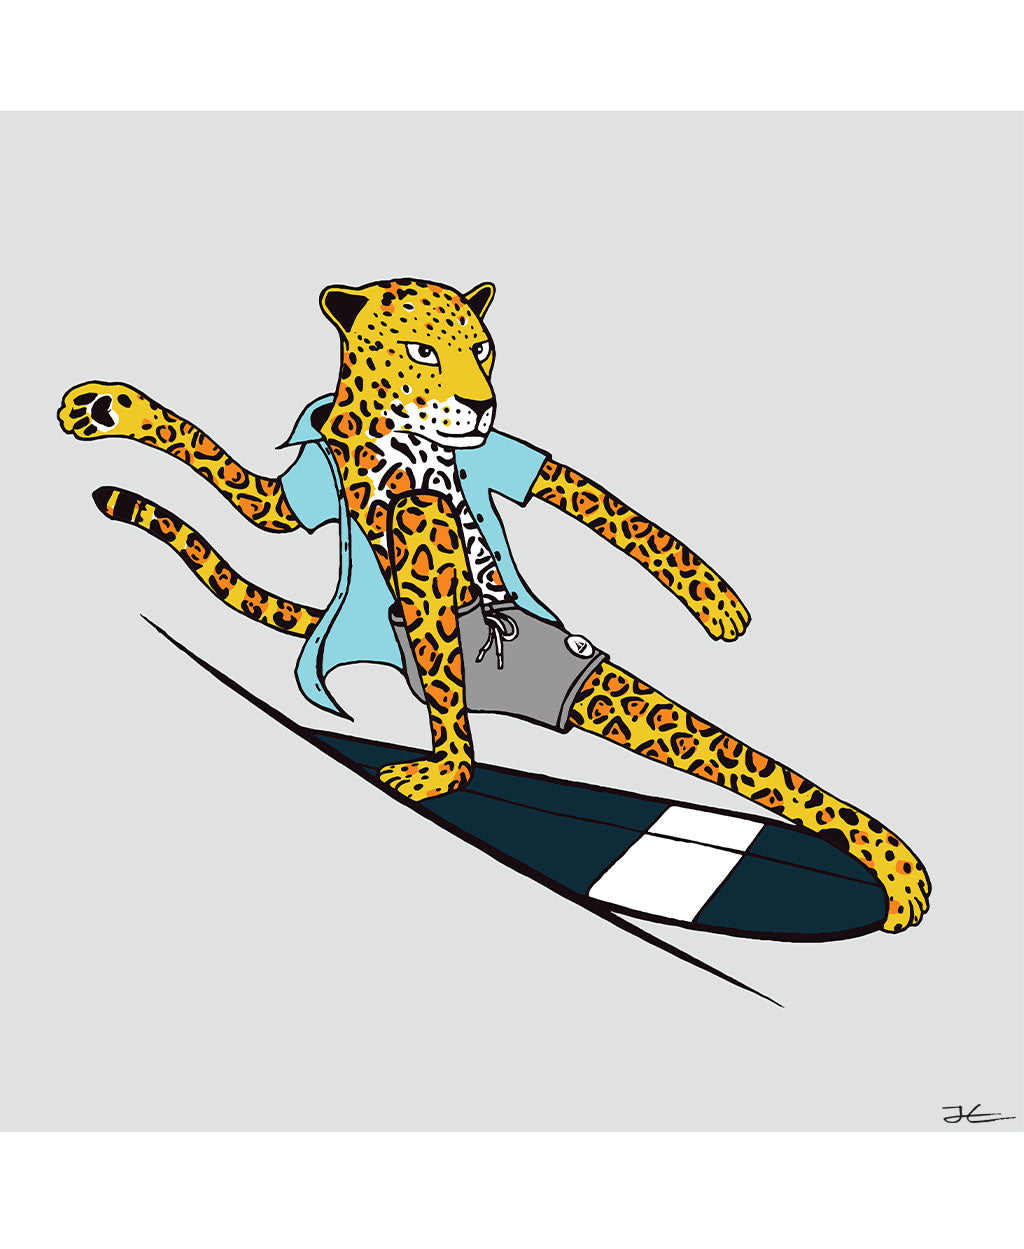 Surfing Jaguar - Print/ Framed Print